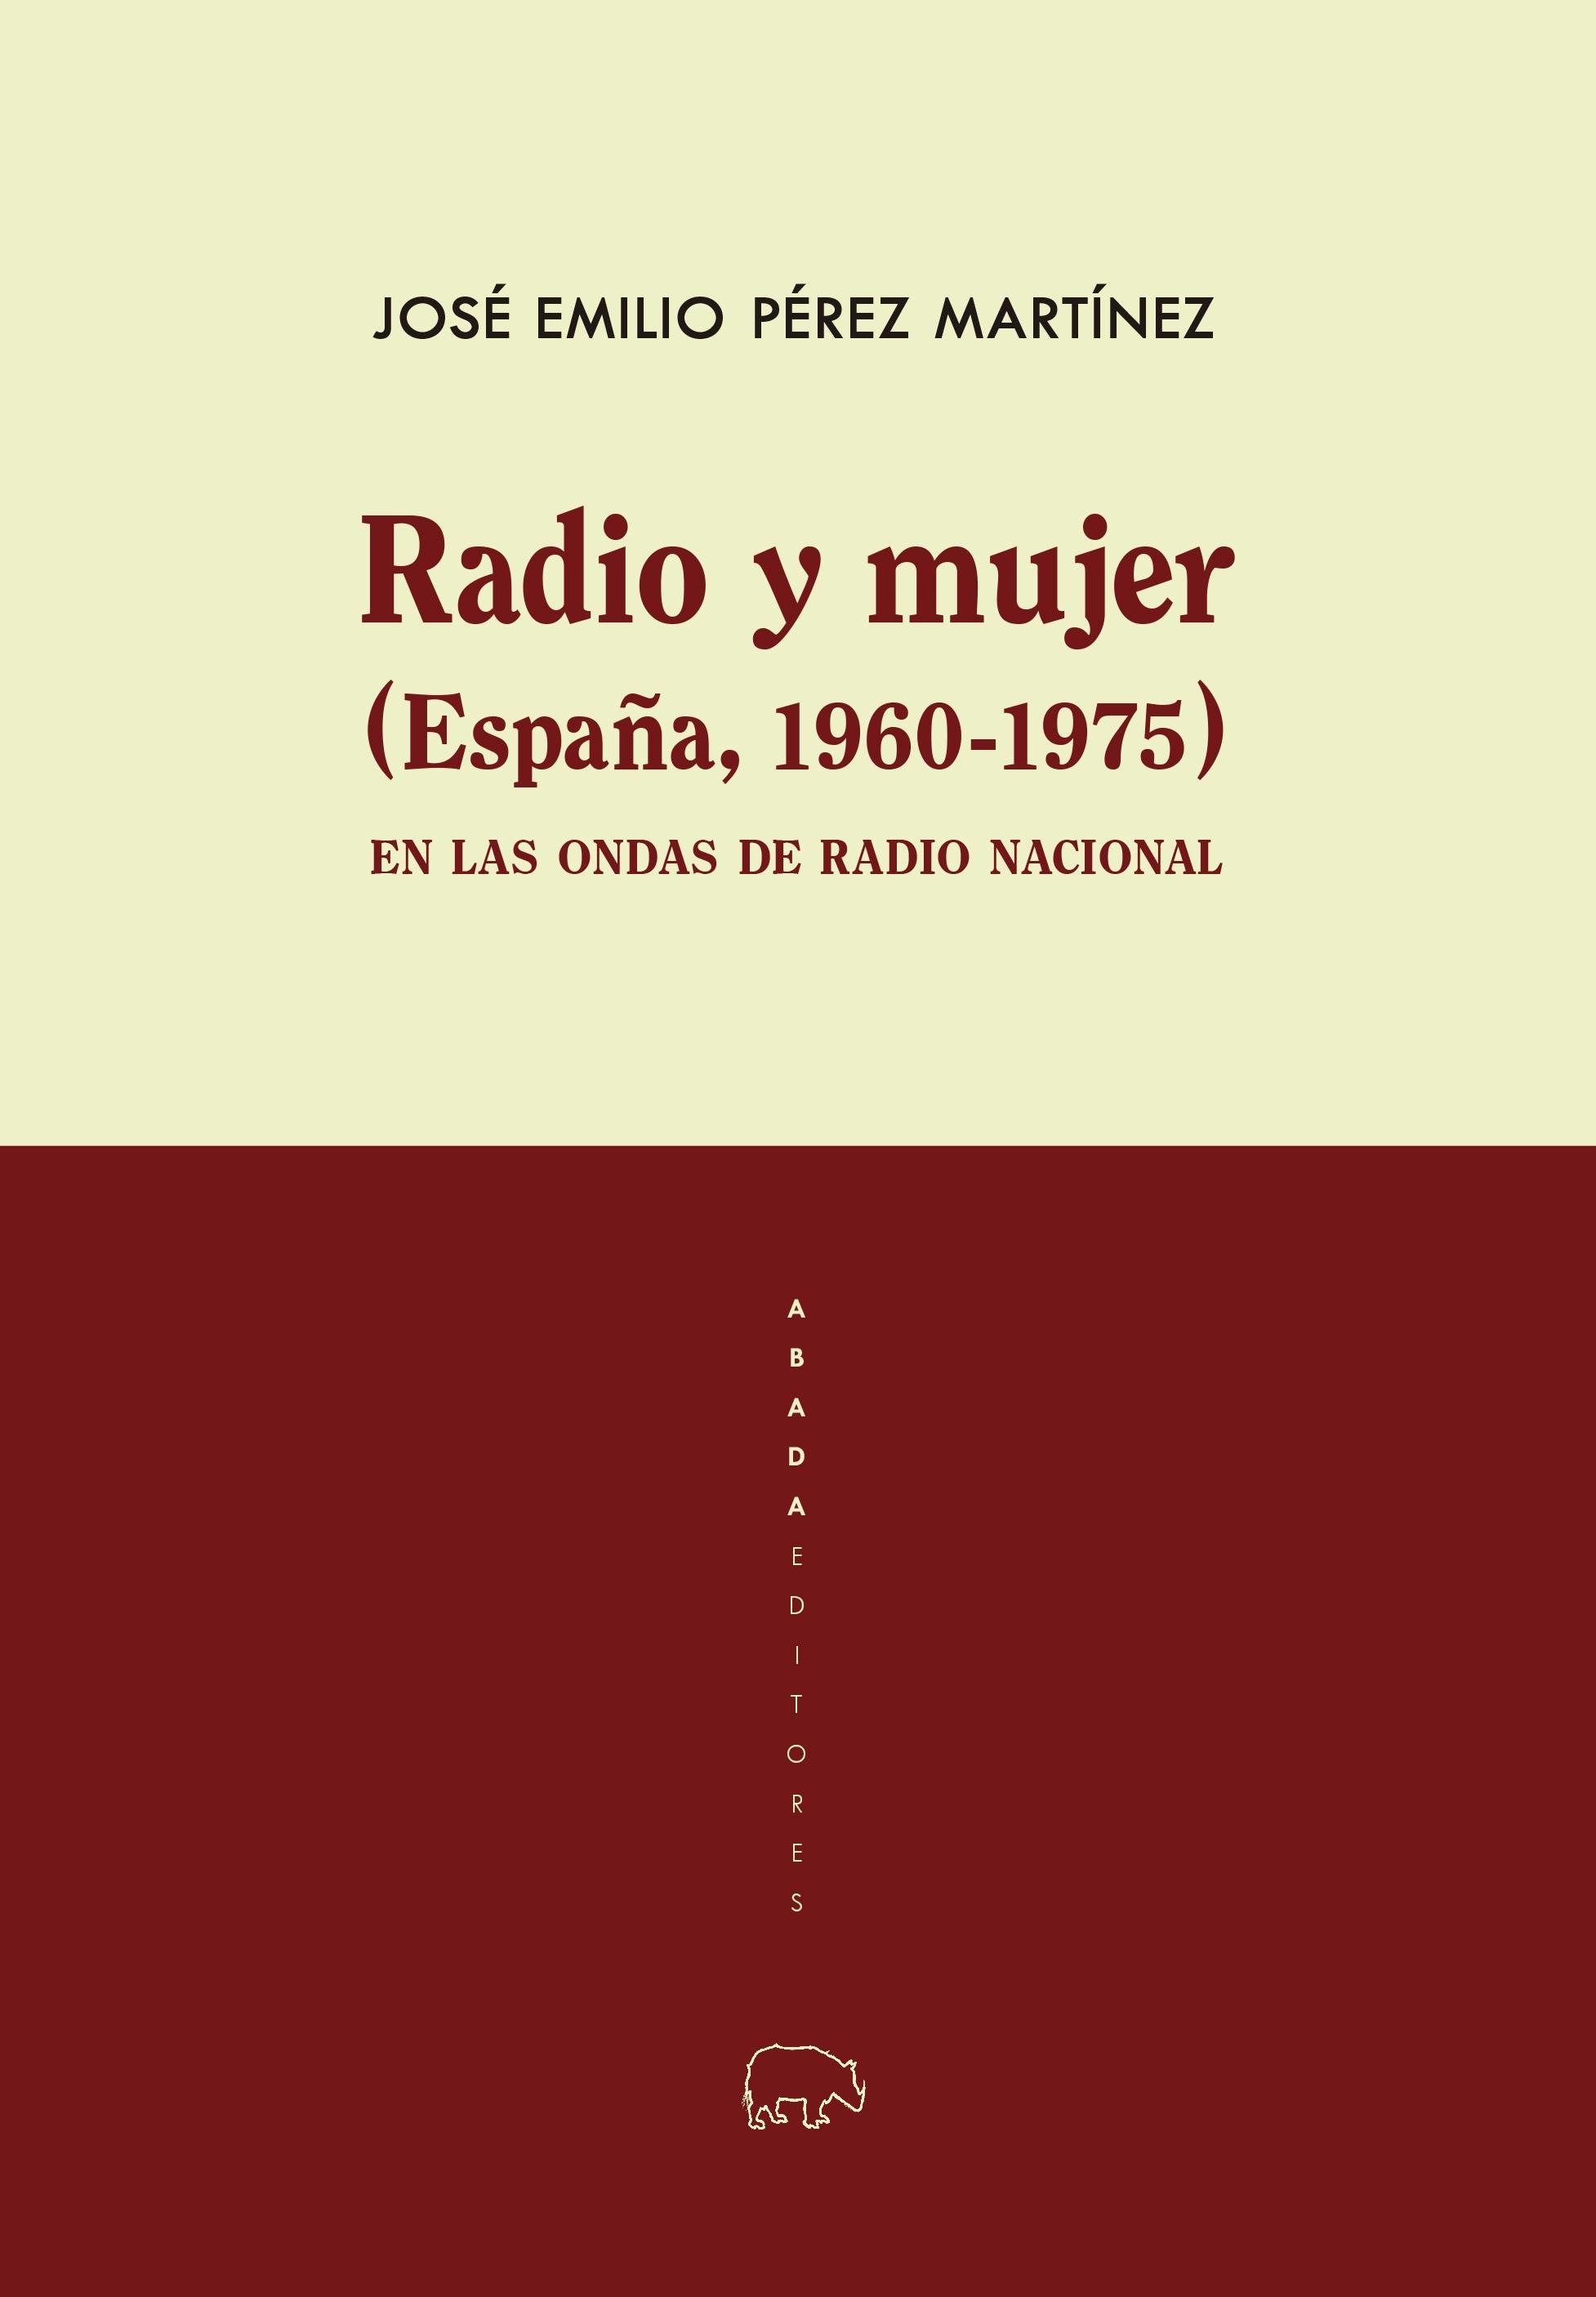 Radio y mujer (España, 1960-1975) "En las ondas de Radio Nacional". 